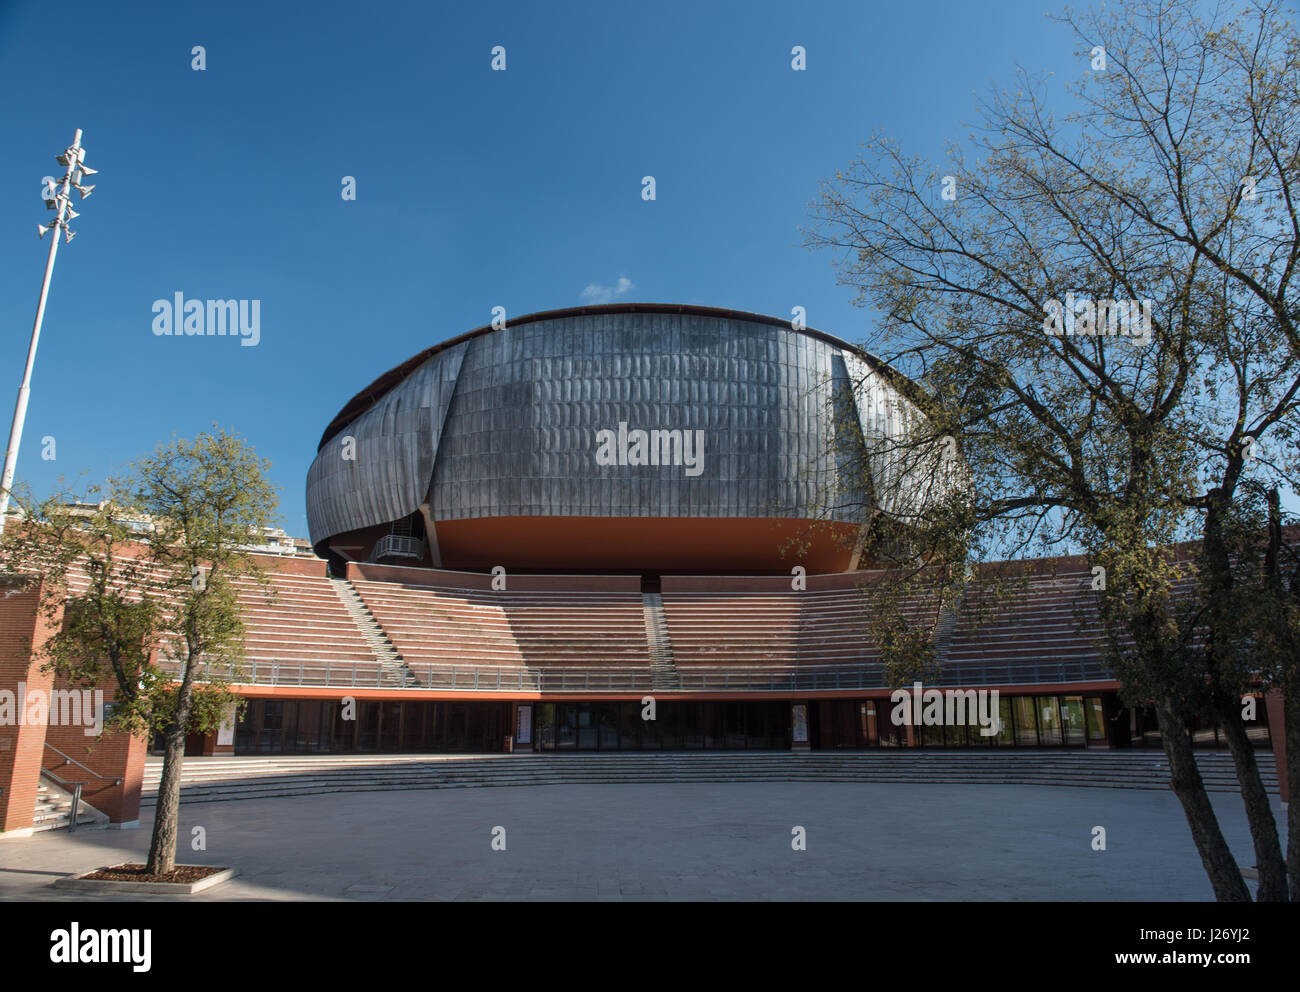 Auditorium Parco della Musica, outdoor moderna architettura paesaggistica struttura teatro e cavea esterna vista dall'ingresso Foto Stock